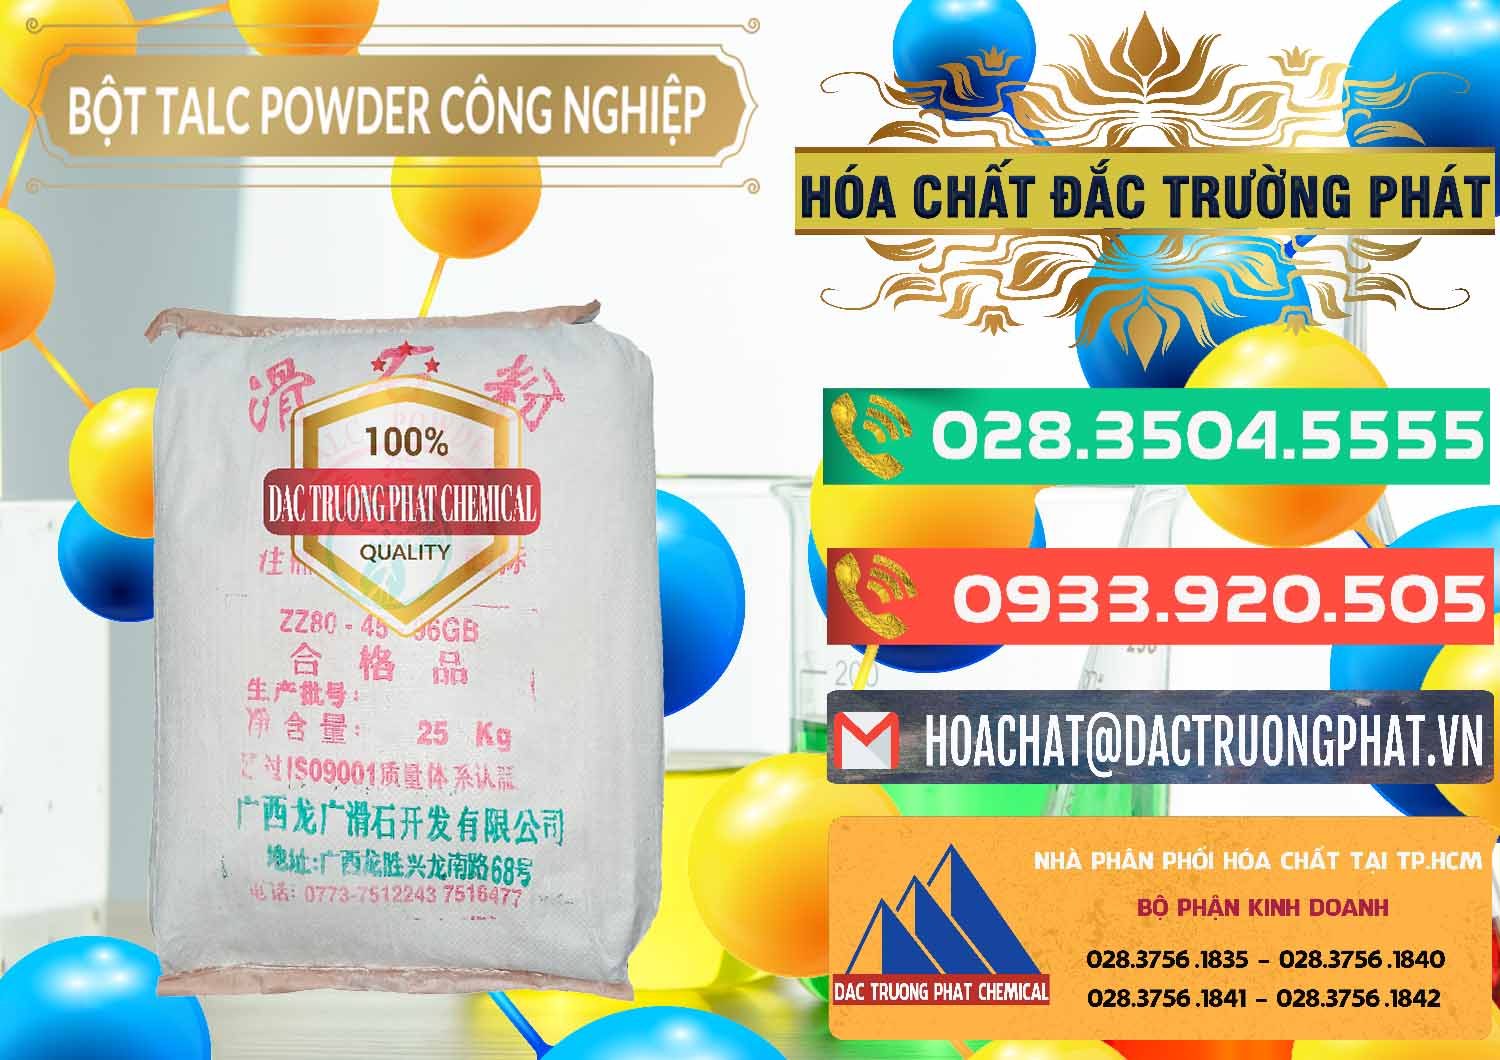 Nơi chuyên bán ( cung ứng ) Bột Talc Powder Công Nghiệp Trung Quốc China - 0037 - Cty phân phối và bán hóa chất tại TP.HCM - congtyhoachat.com.vn